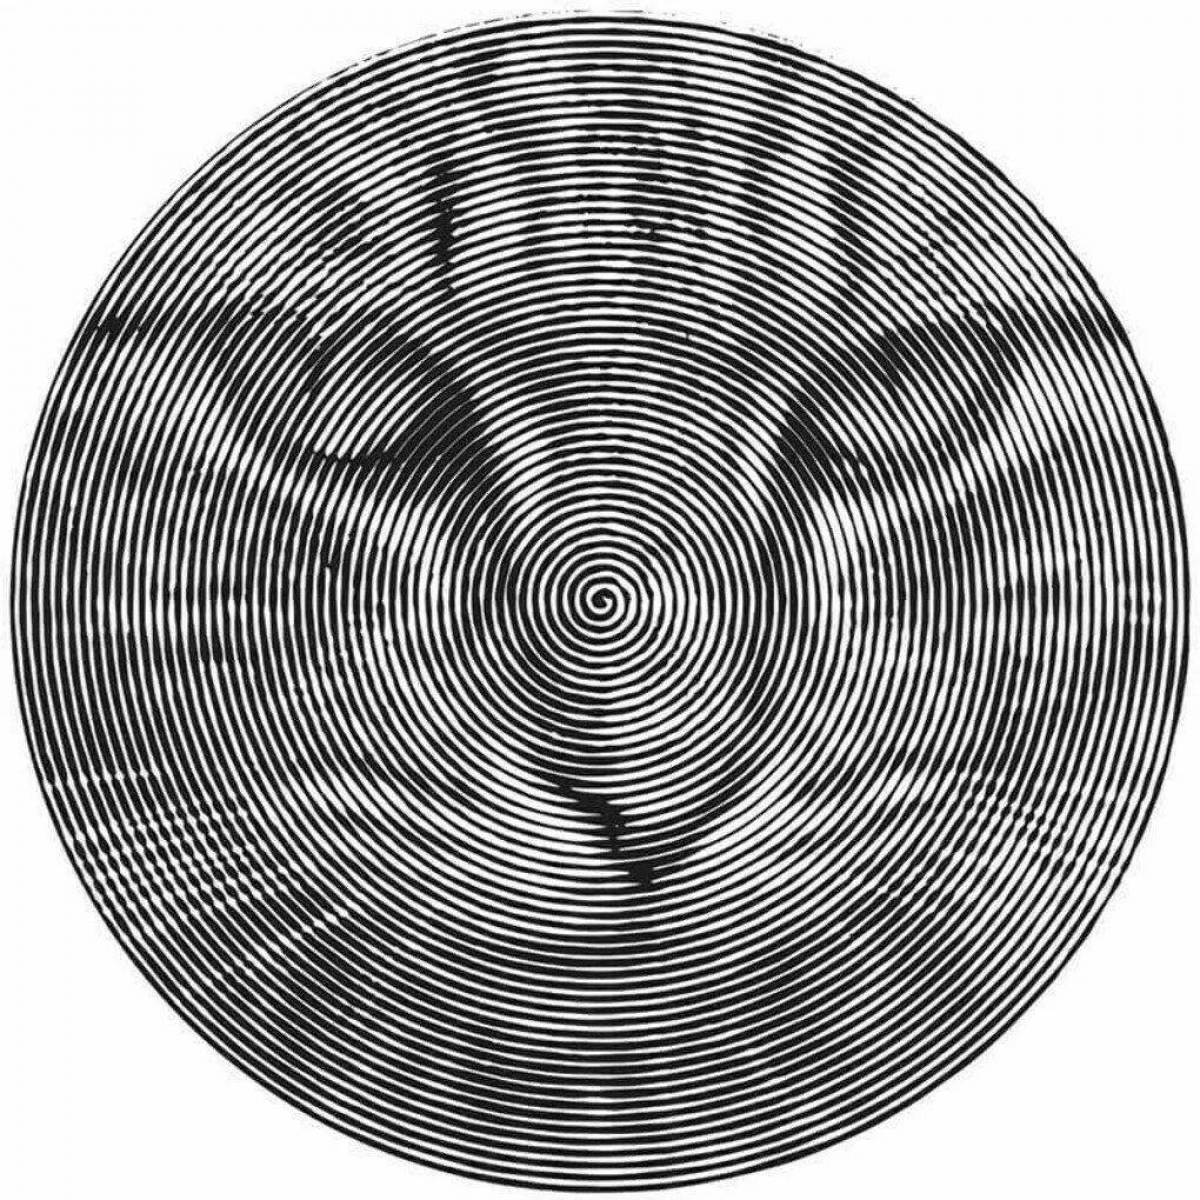 Уникальная страница раскраски спирального кота